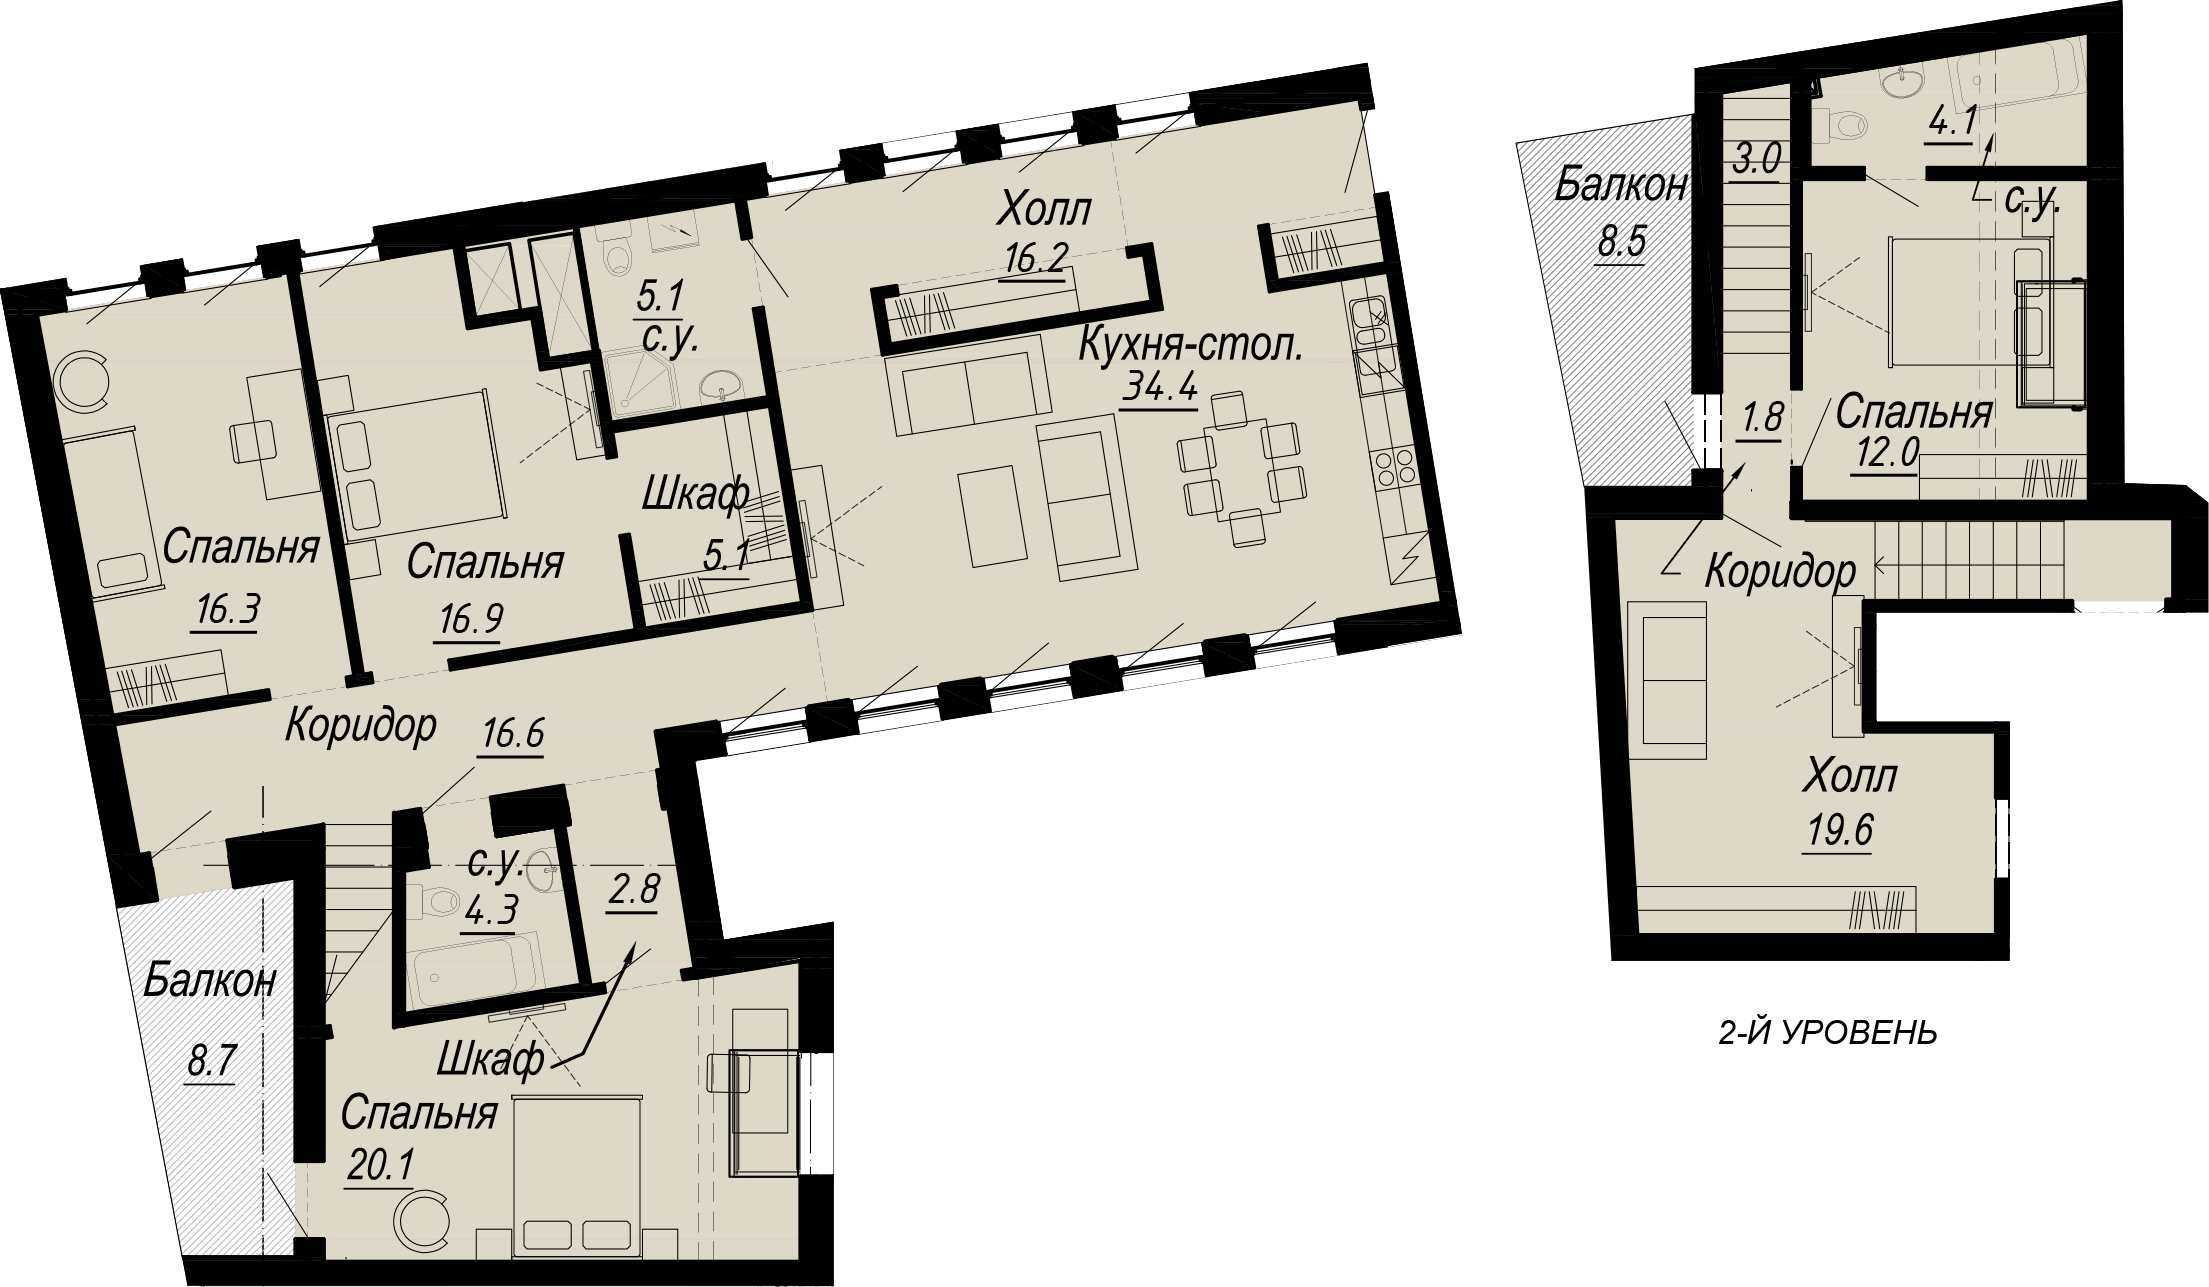 4-комнатная квартира  №15-7 в Meltzer Hall: 168.62 м², этаж 7 - купить в Санкт-Петербурге